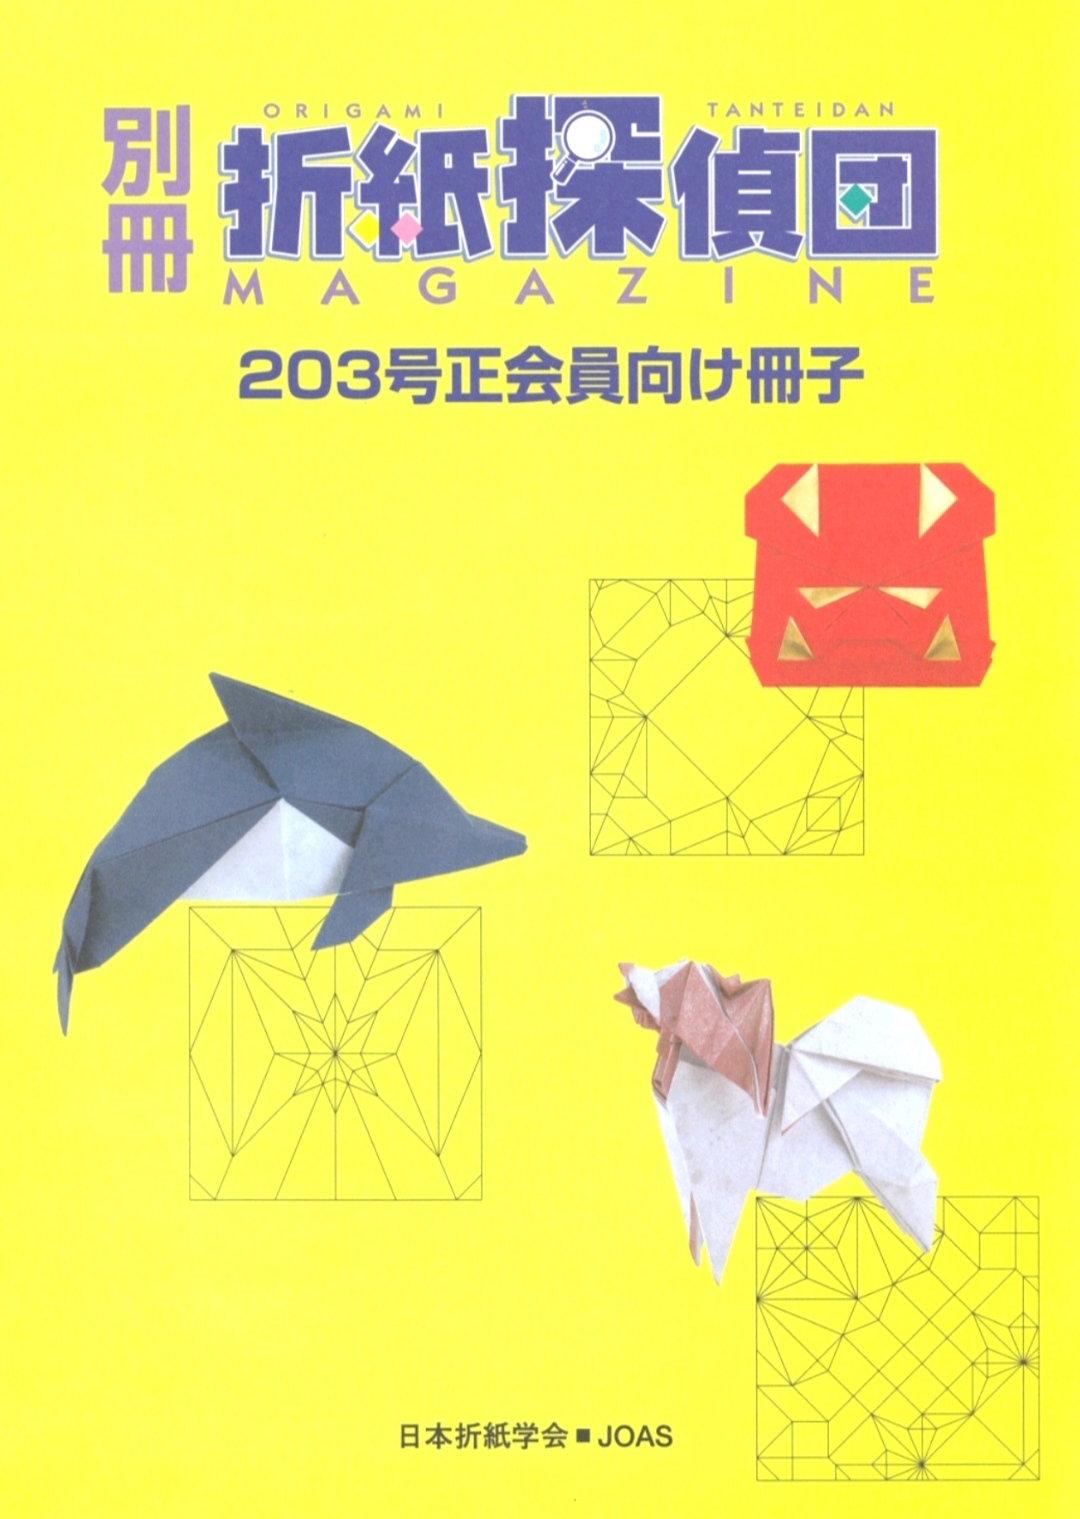 Origami Tanteidan Magazine 203 extra : page 1.